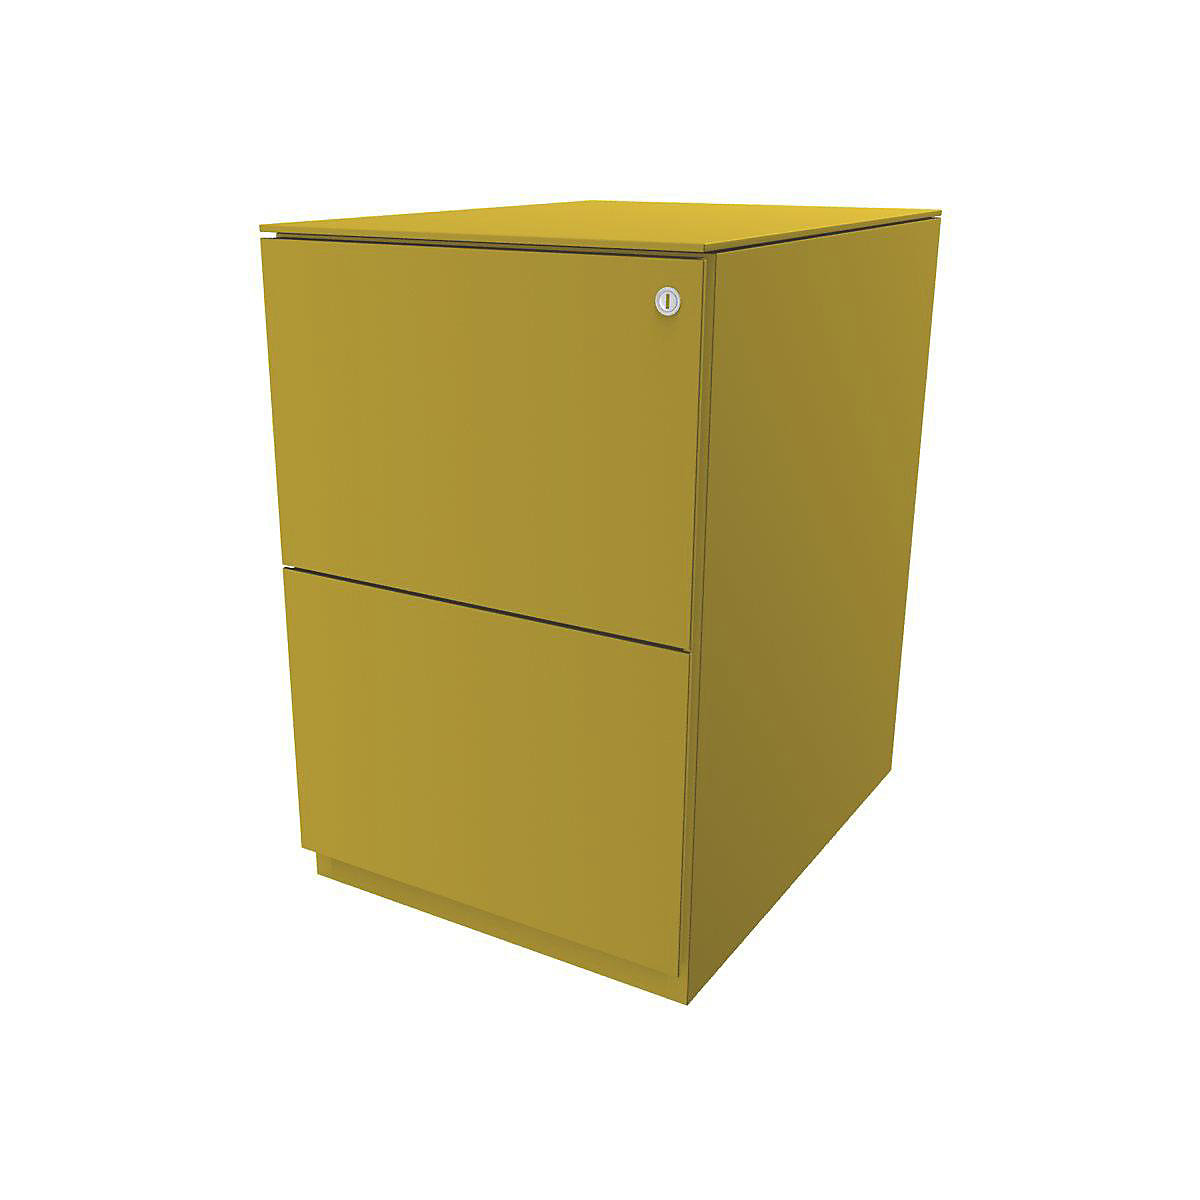 Pojízdný kontejner Note™, se 2 kartotékami pro závěsné složky – BISLEY, v x š 652 x 420 mm, s horní krycí deskou, žlutá-11